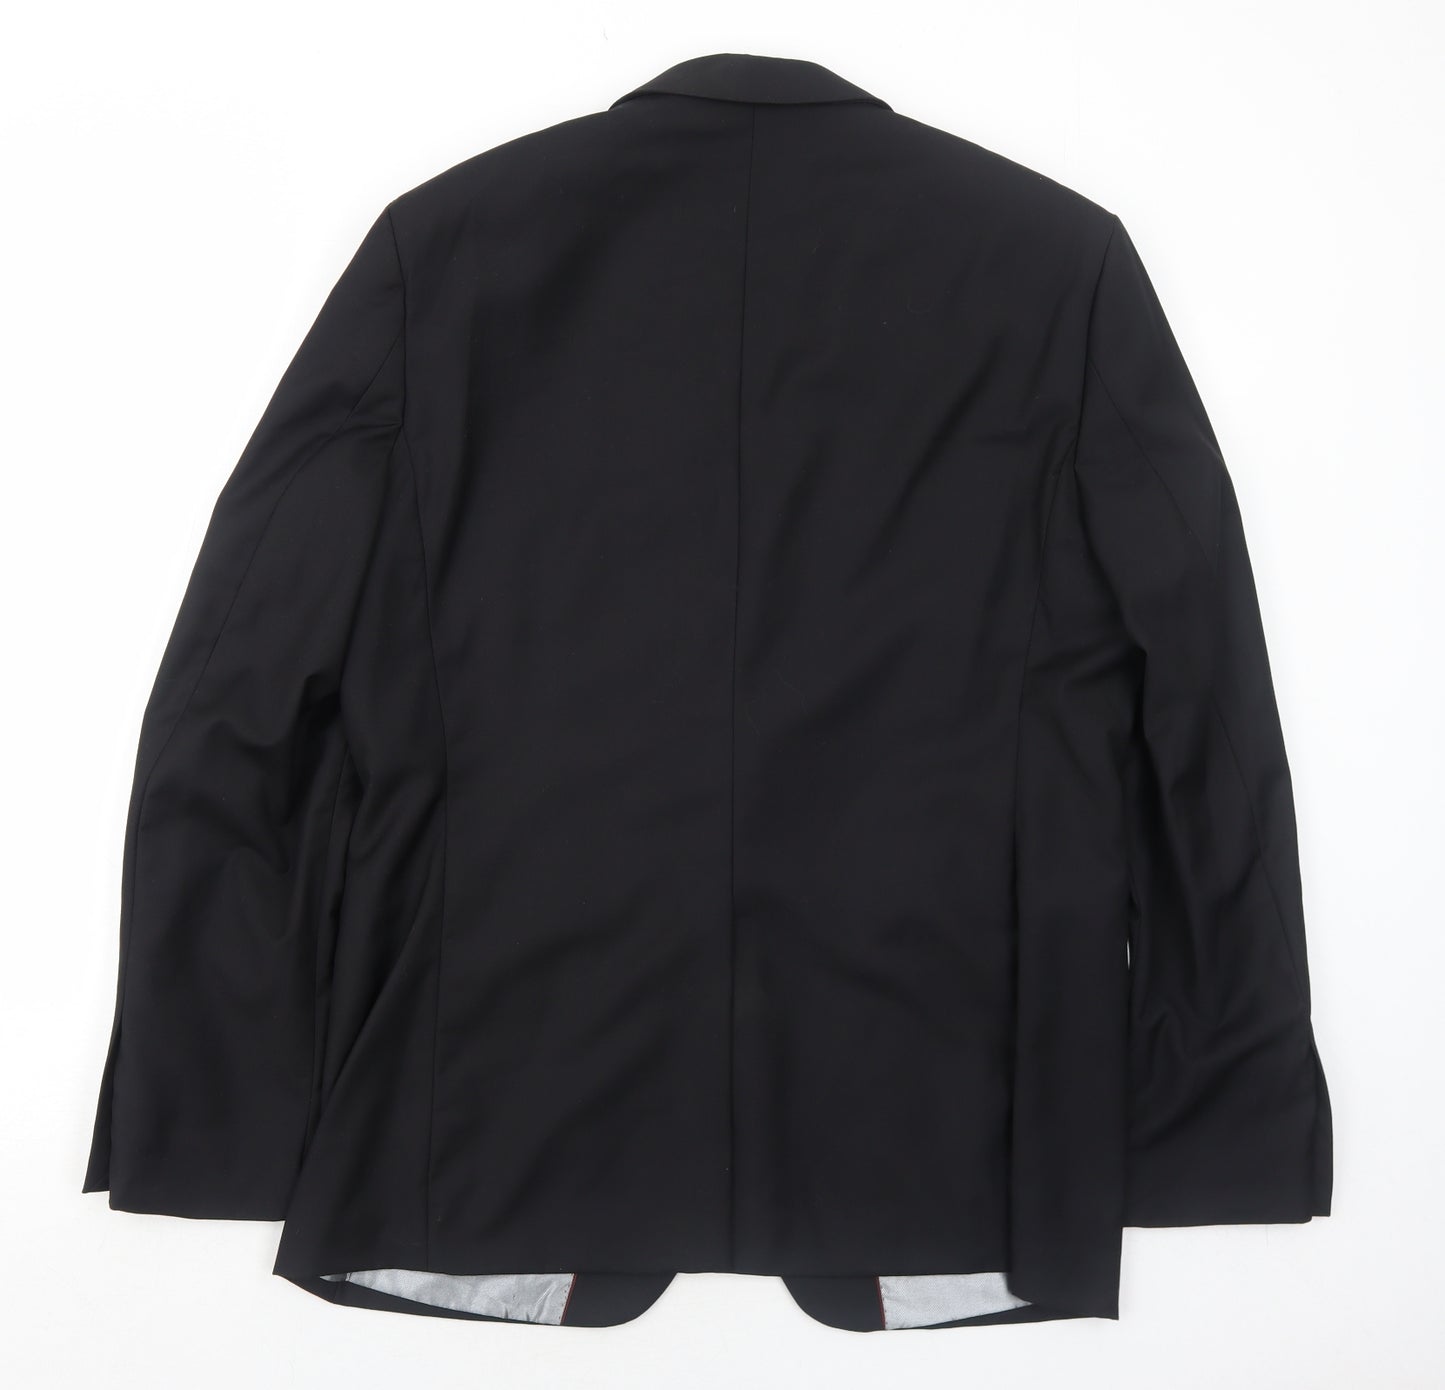 Goodsouls Mens Black Polyester Jacket Suit Jacket Size 40 Regular